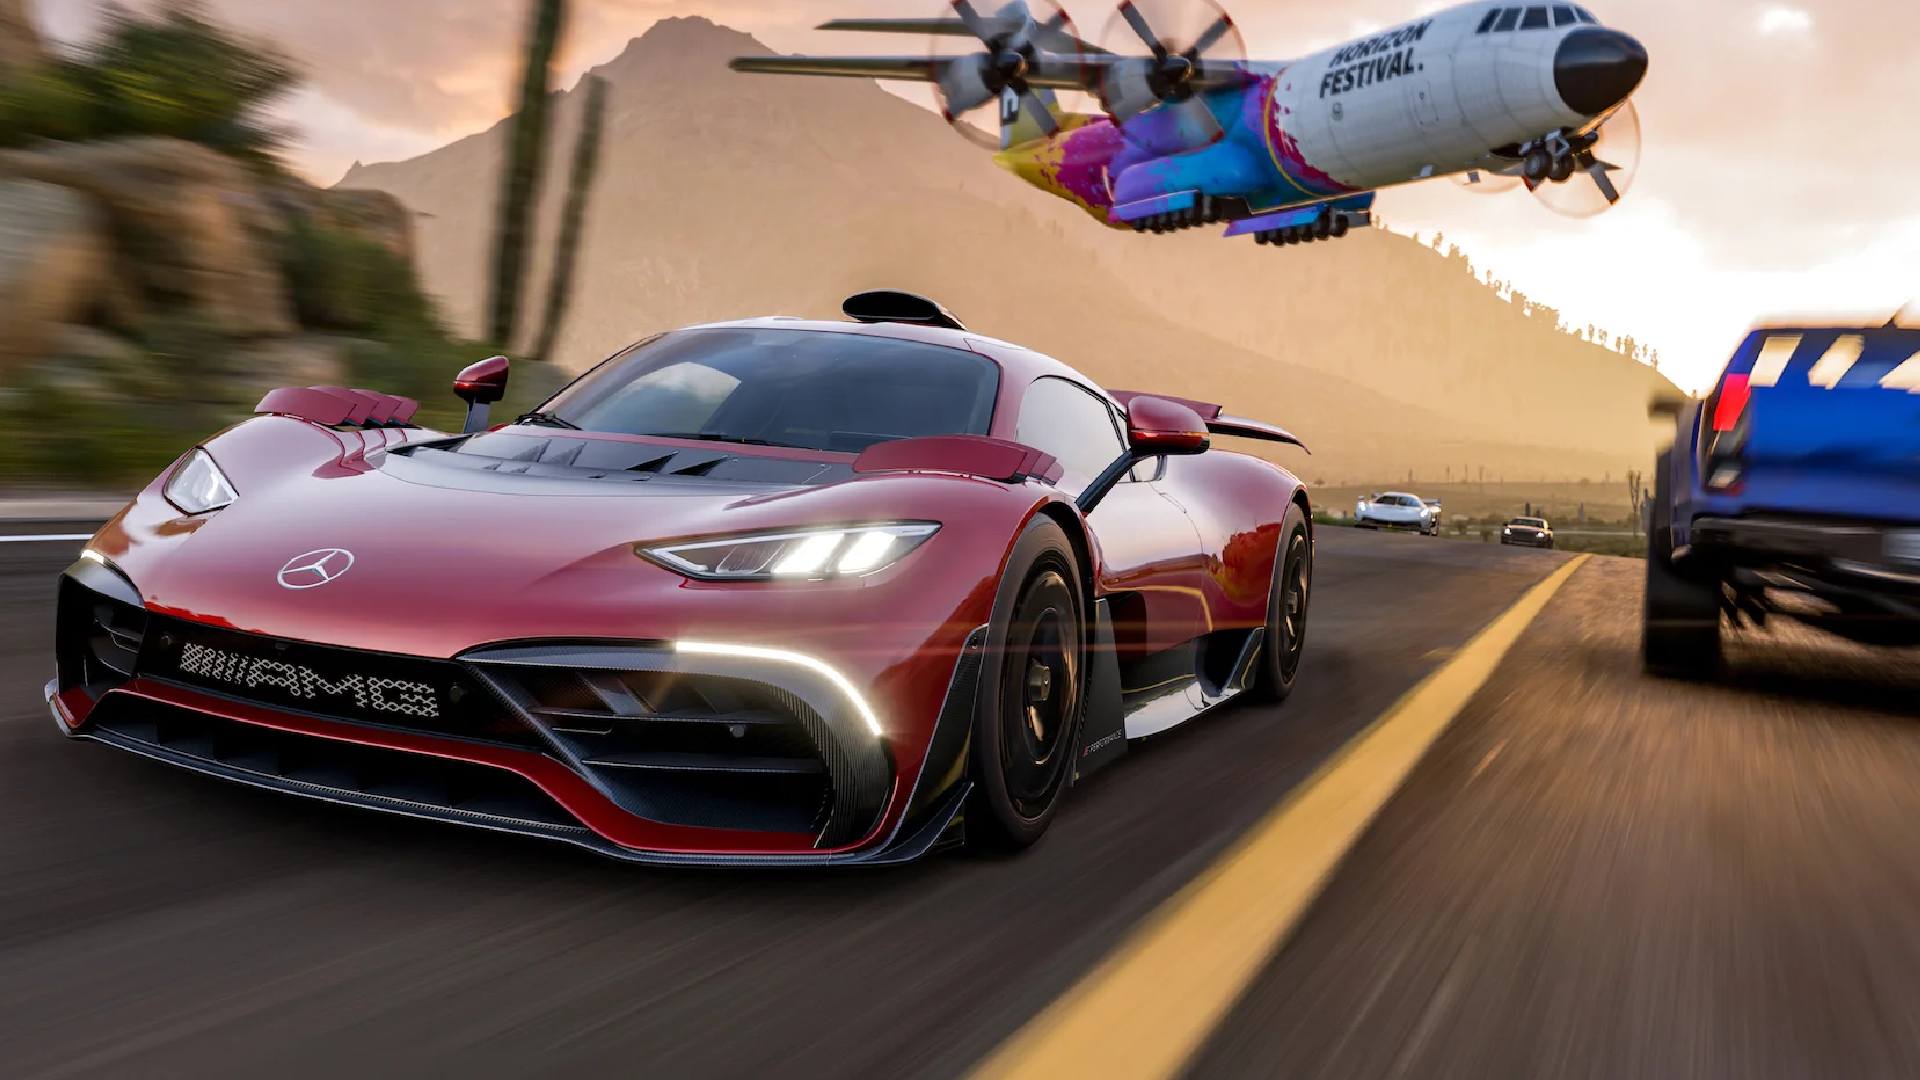 5 Best Online Car Games for 2018